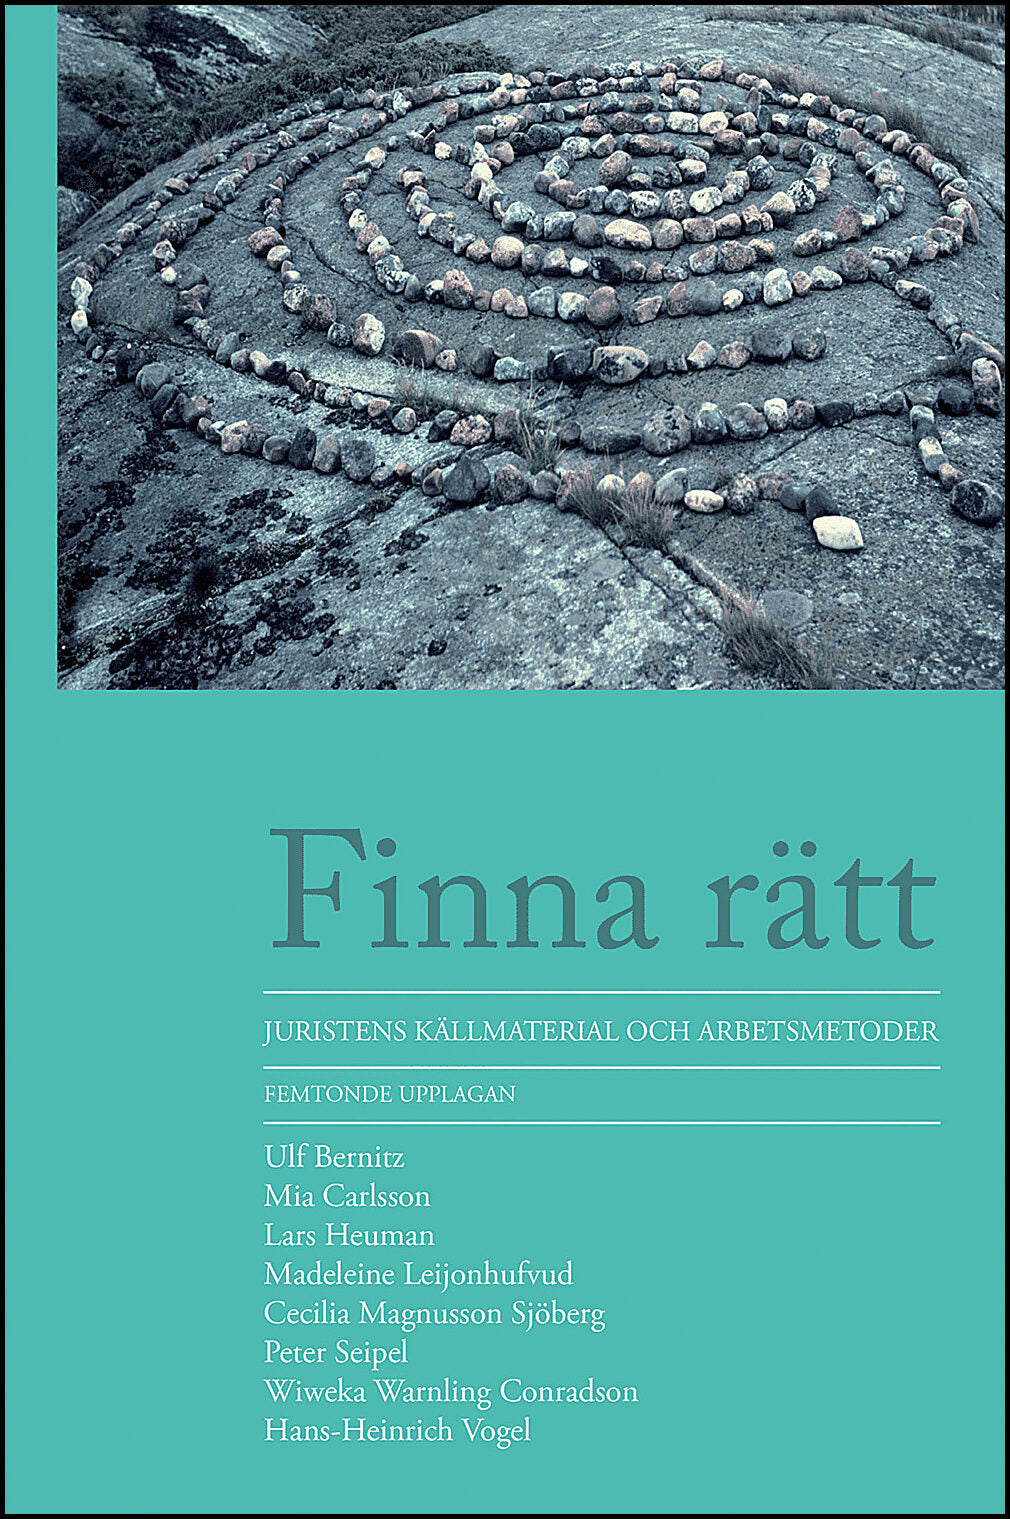 Carlsson, Mia | Heuman, Lars | et al | Finna rätt : Juristens källmaterial och arbetsmetoder